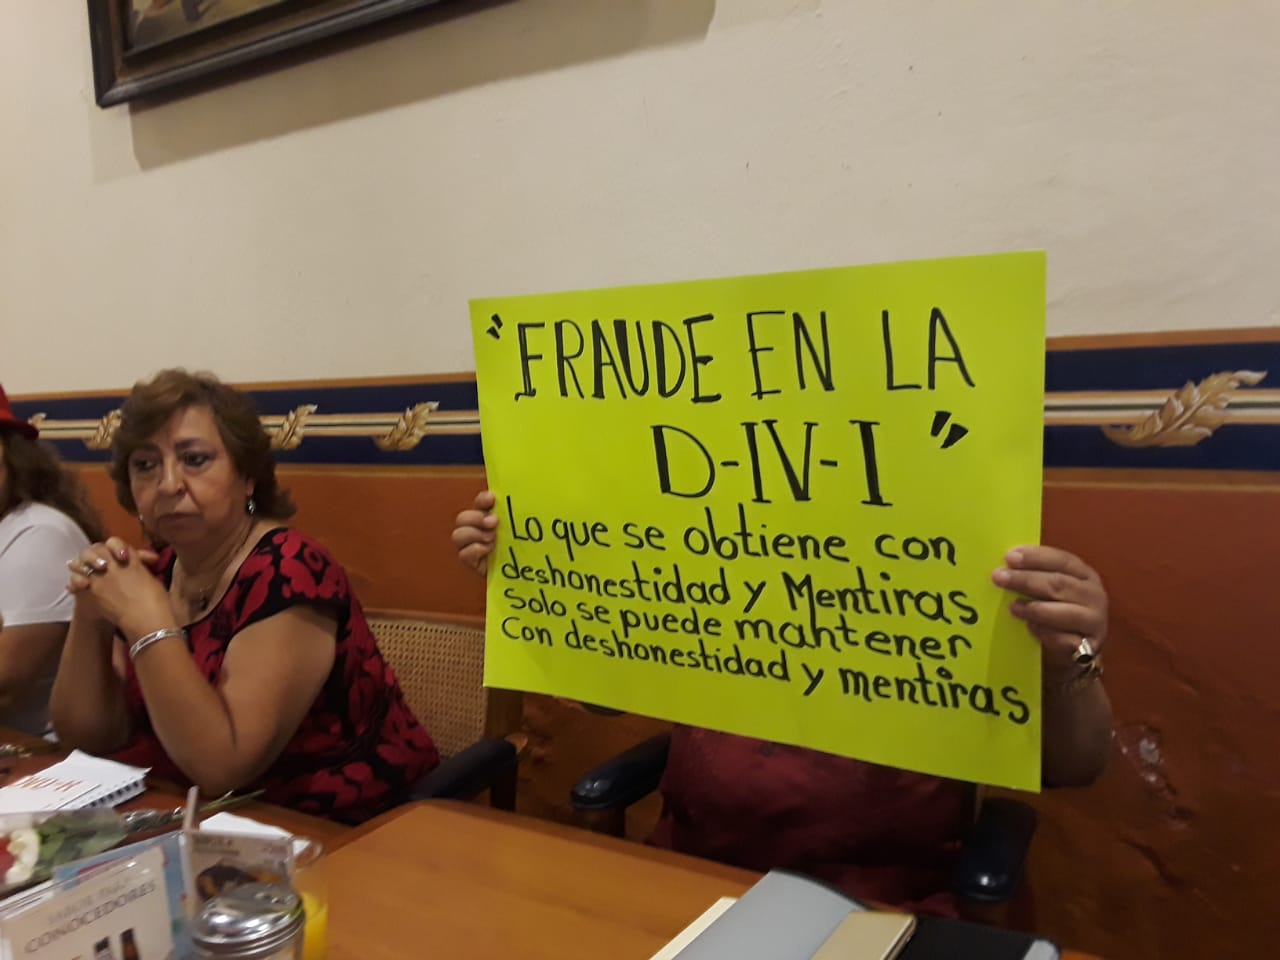  Jubilados del SNTE denuncian irregularidades en cambio de Comité de Delegación D-IV-I